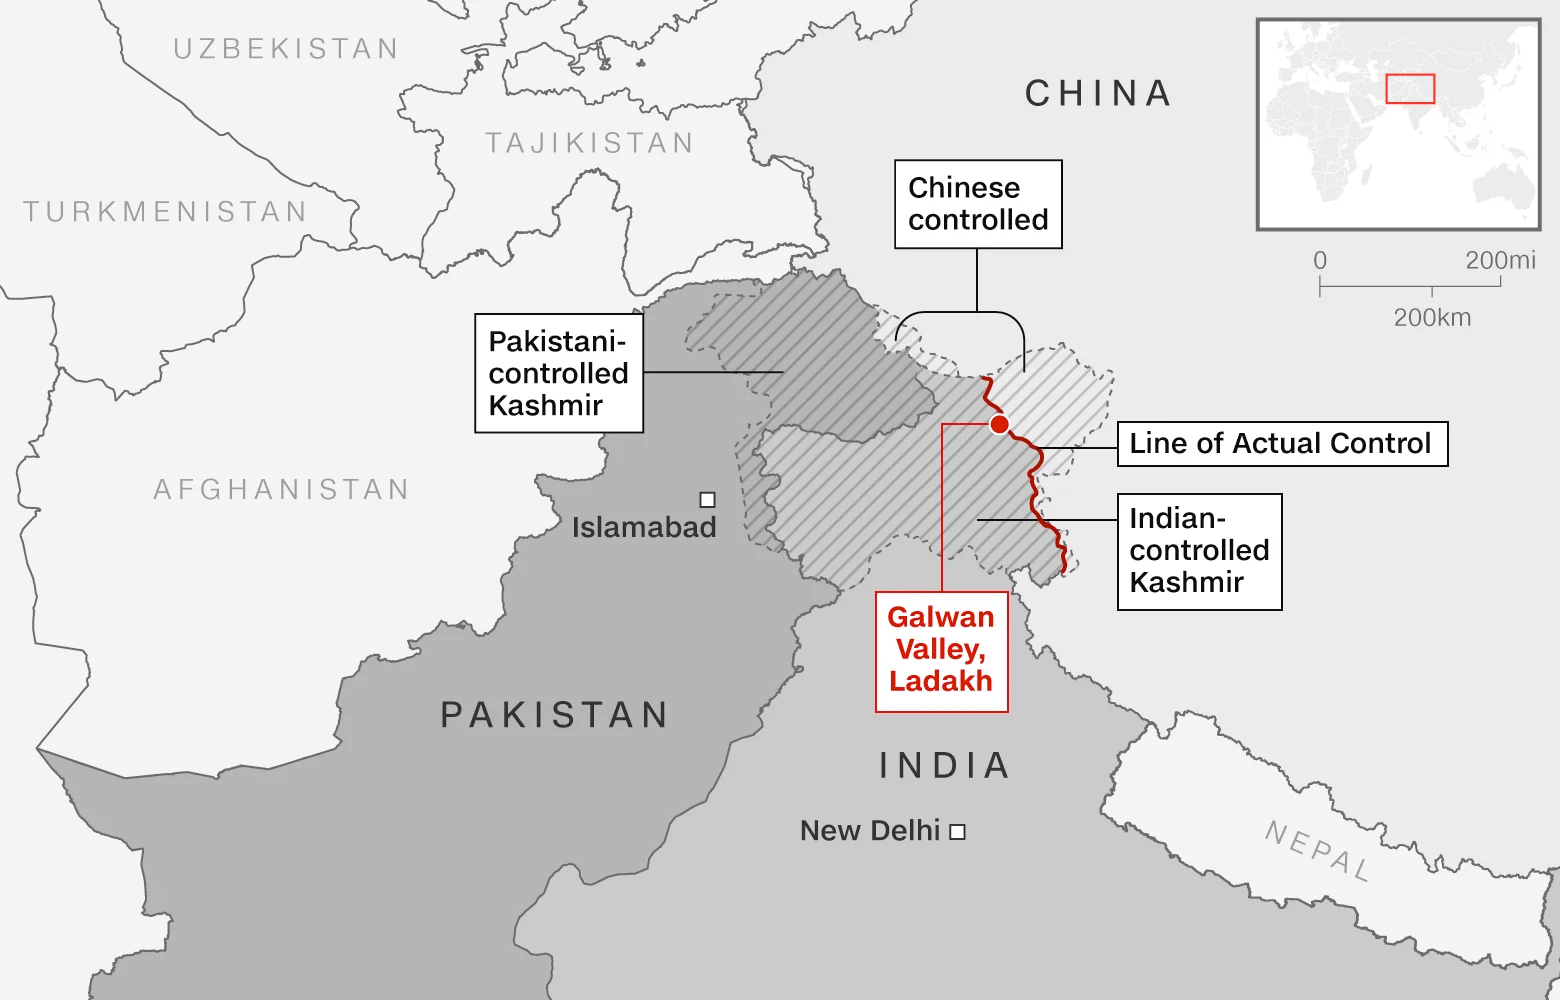 Последствия конфликта между индией и пакистаном. Пограничный конфликт Индии и Китая 2020. Индо-китайский пограничный конфликт (2020). Граница Индии и Китая конфликт на карте. Спорная территория между Индией и Пакистаном и Китаем.